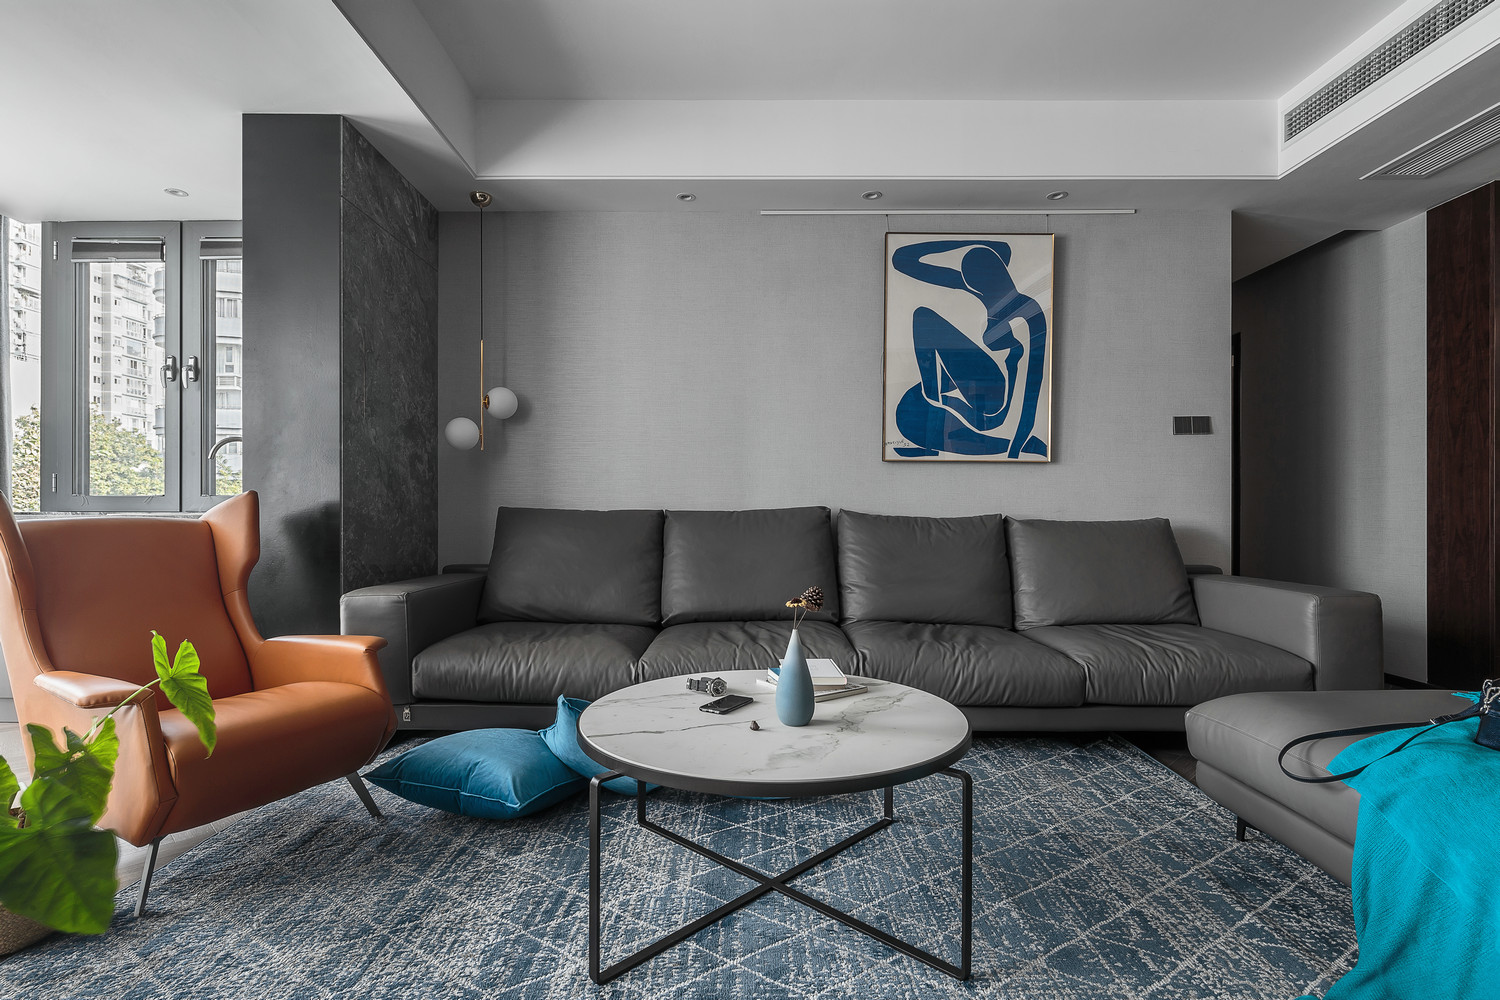 客厅灰色皮质沙发让工业格调更加浓厚，低调中彰显着不凡的气质。